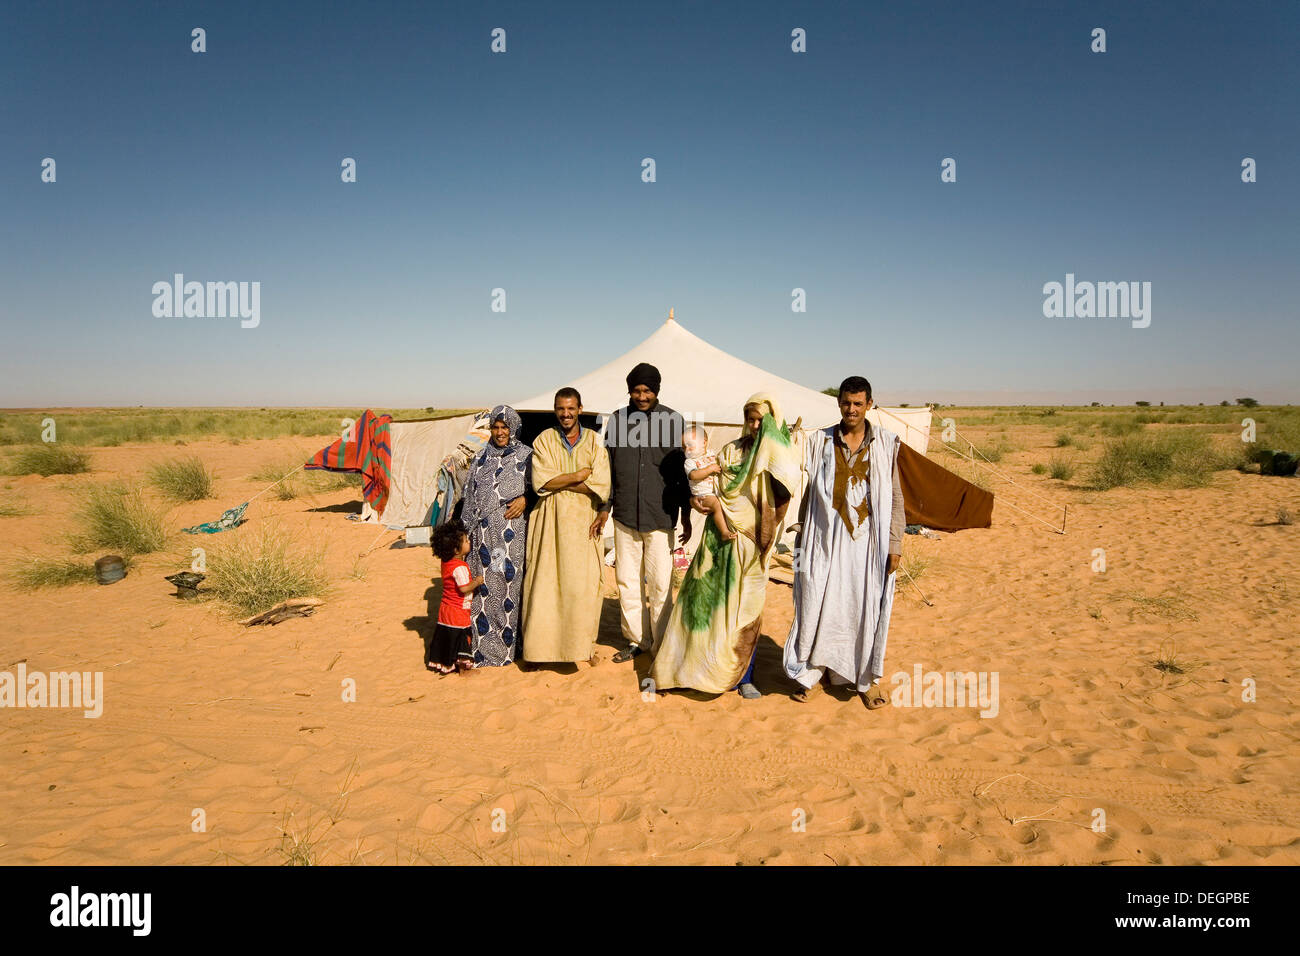 Famille nomade islamique à l'extérieur de leur tente avec salon agente de liaison communautaire, NW désert du Sahara, de la Mauritanie, l'Afrique de l'Ouest Banque D'Images